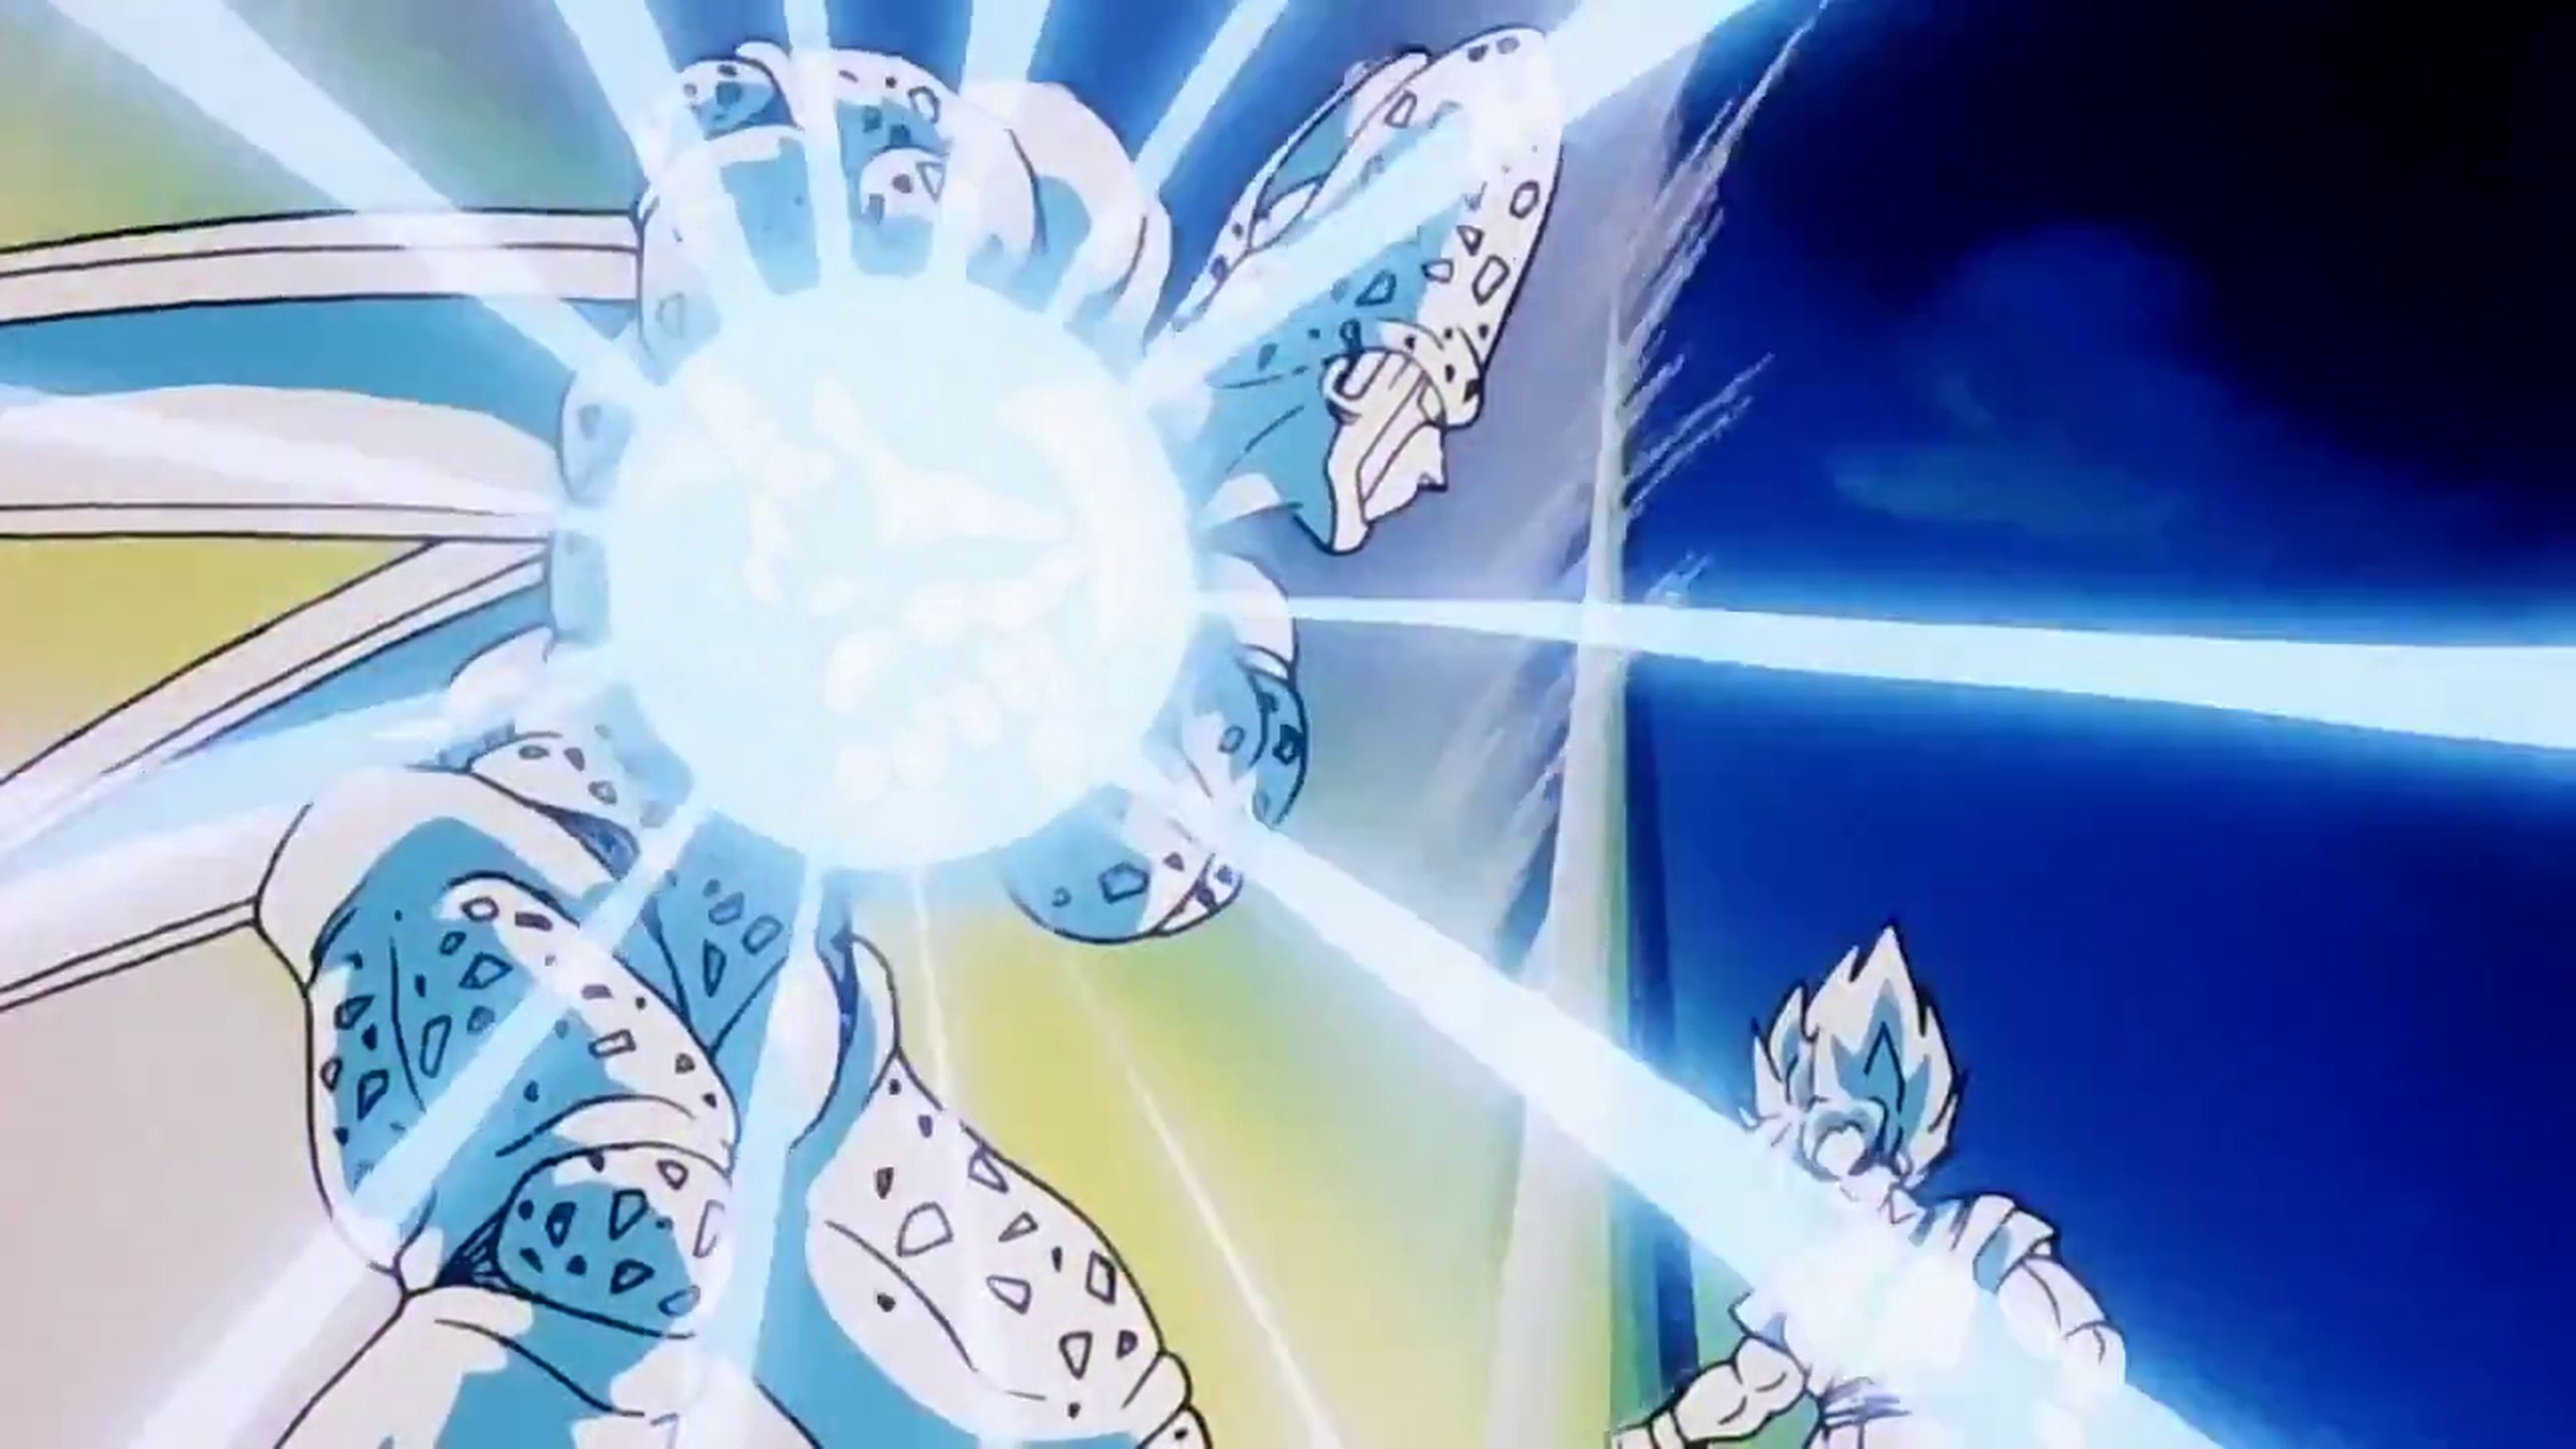 Dragon Ball Z - Crítica del capítulo 178 en el que Cell utilizó todas las técnicas de los Guerreros Z contra Goku